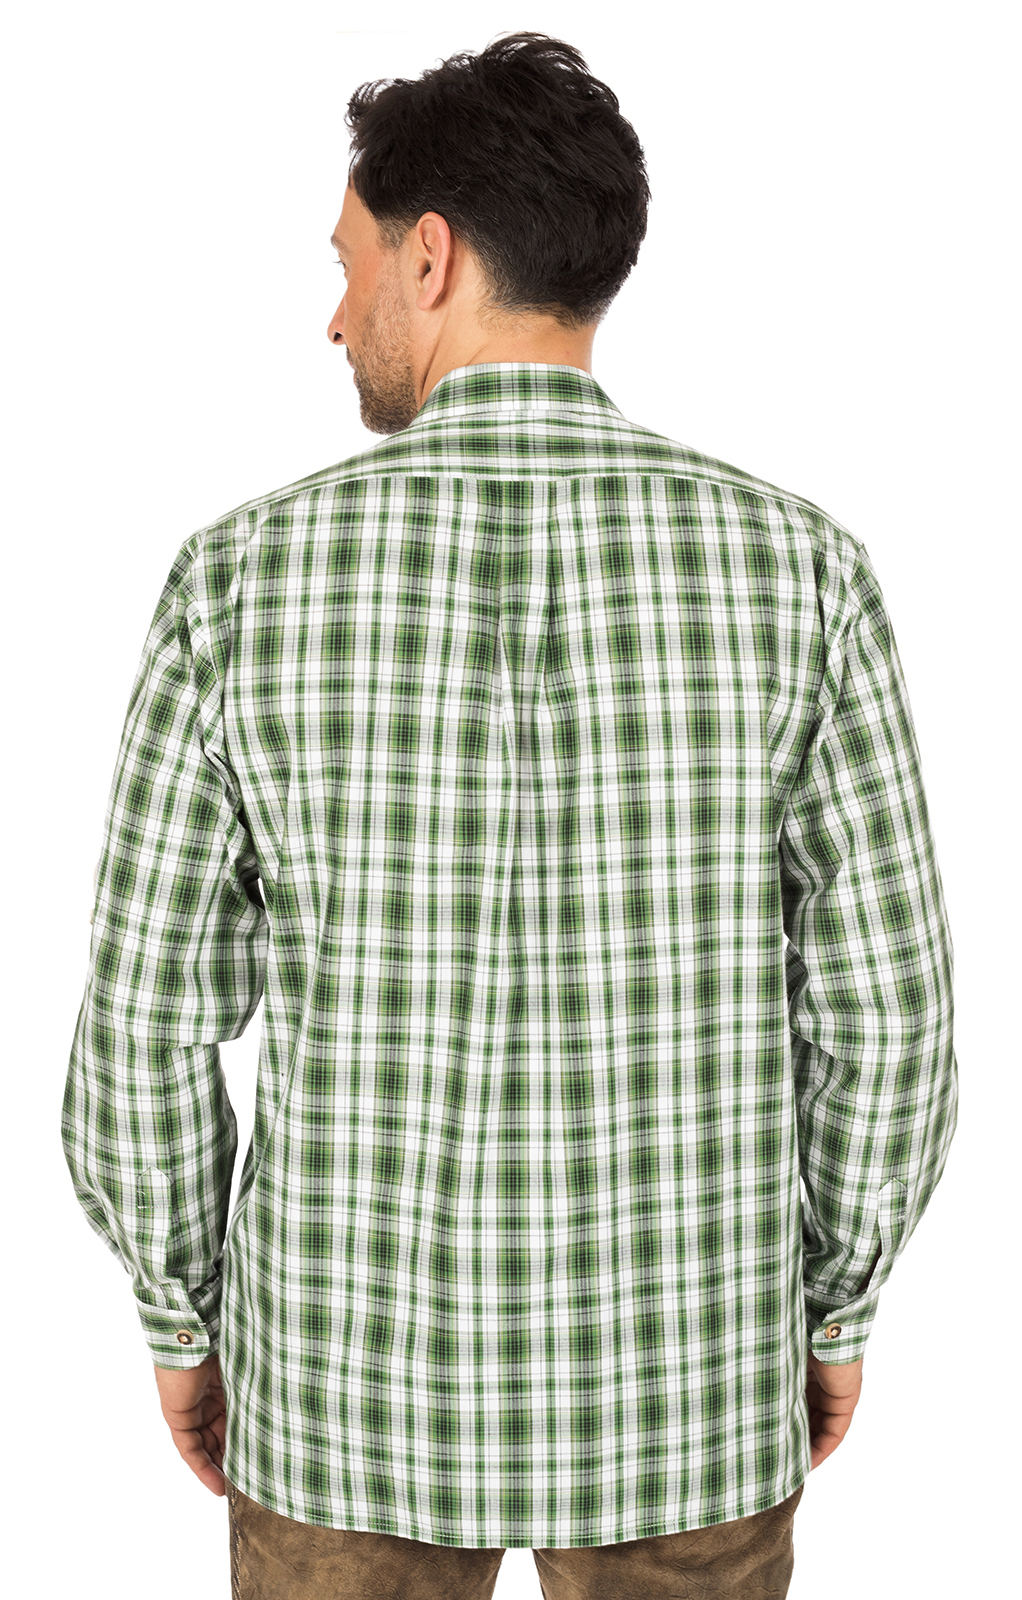 weitere Bilder von German traditional shirt green